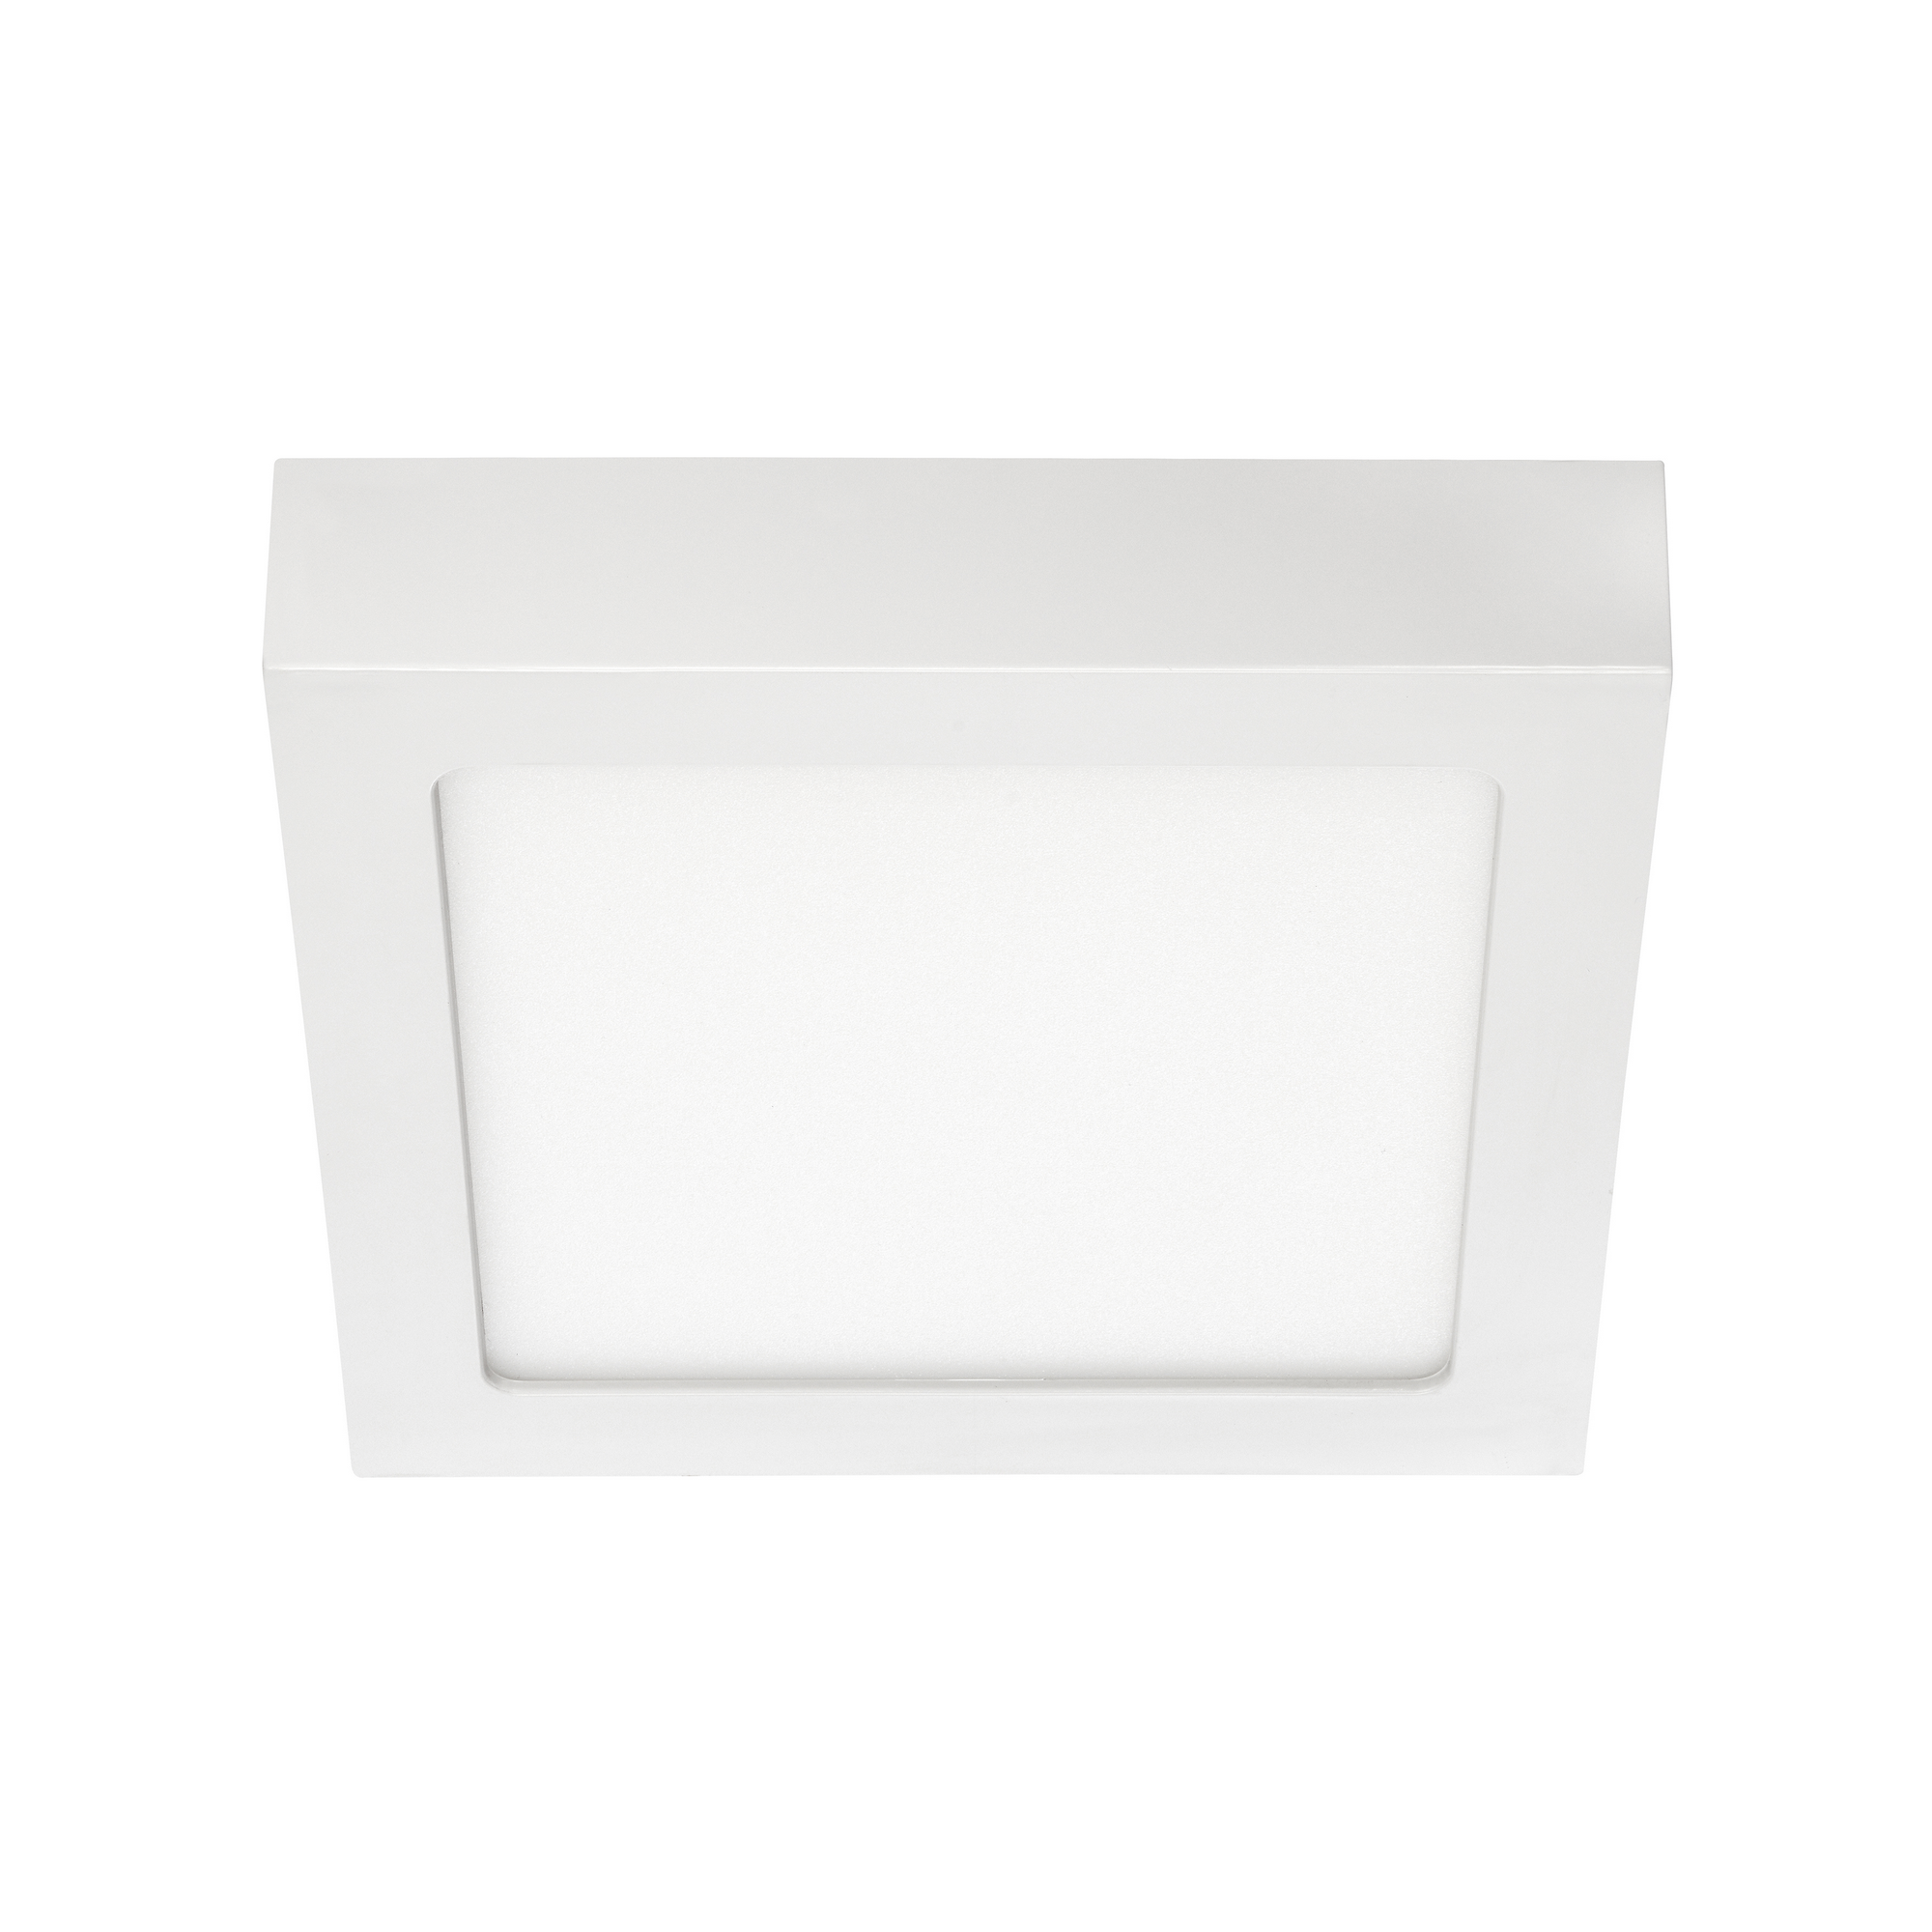 LED-Deckenleuchte 'Fire' weiß 17 x 17 x 3,2 cm 1000 lm neutralweiß + product picture